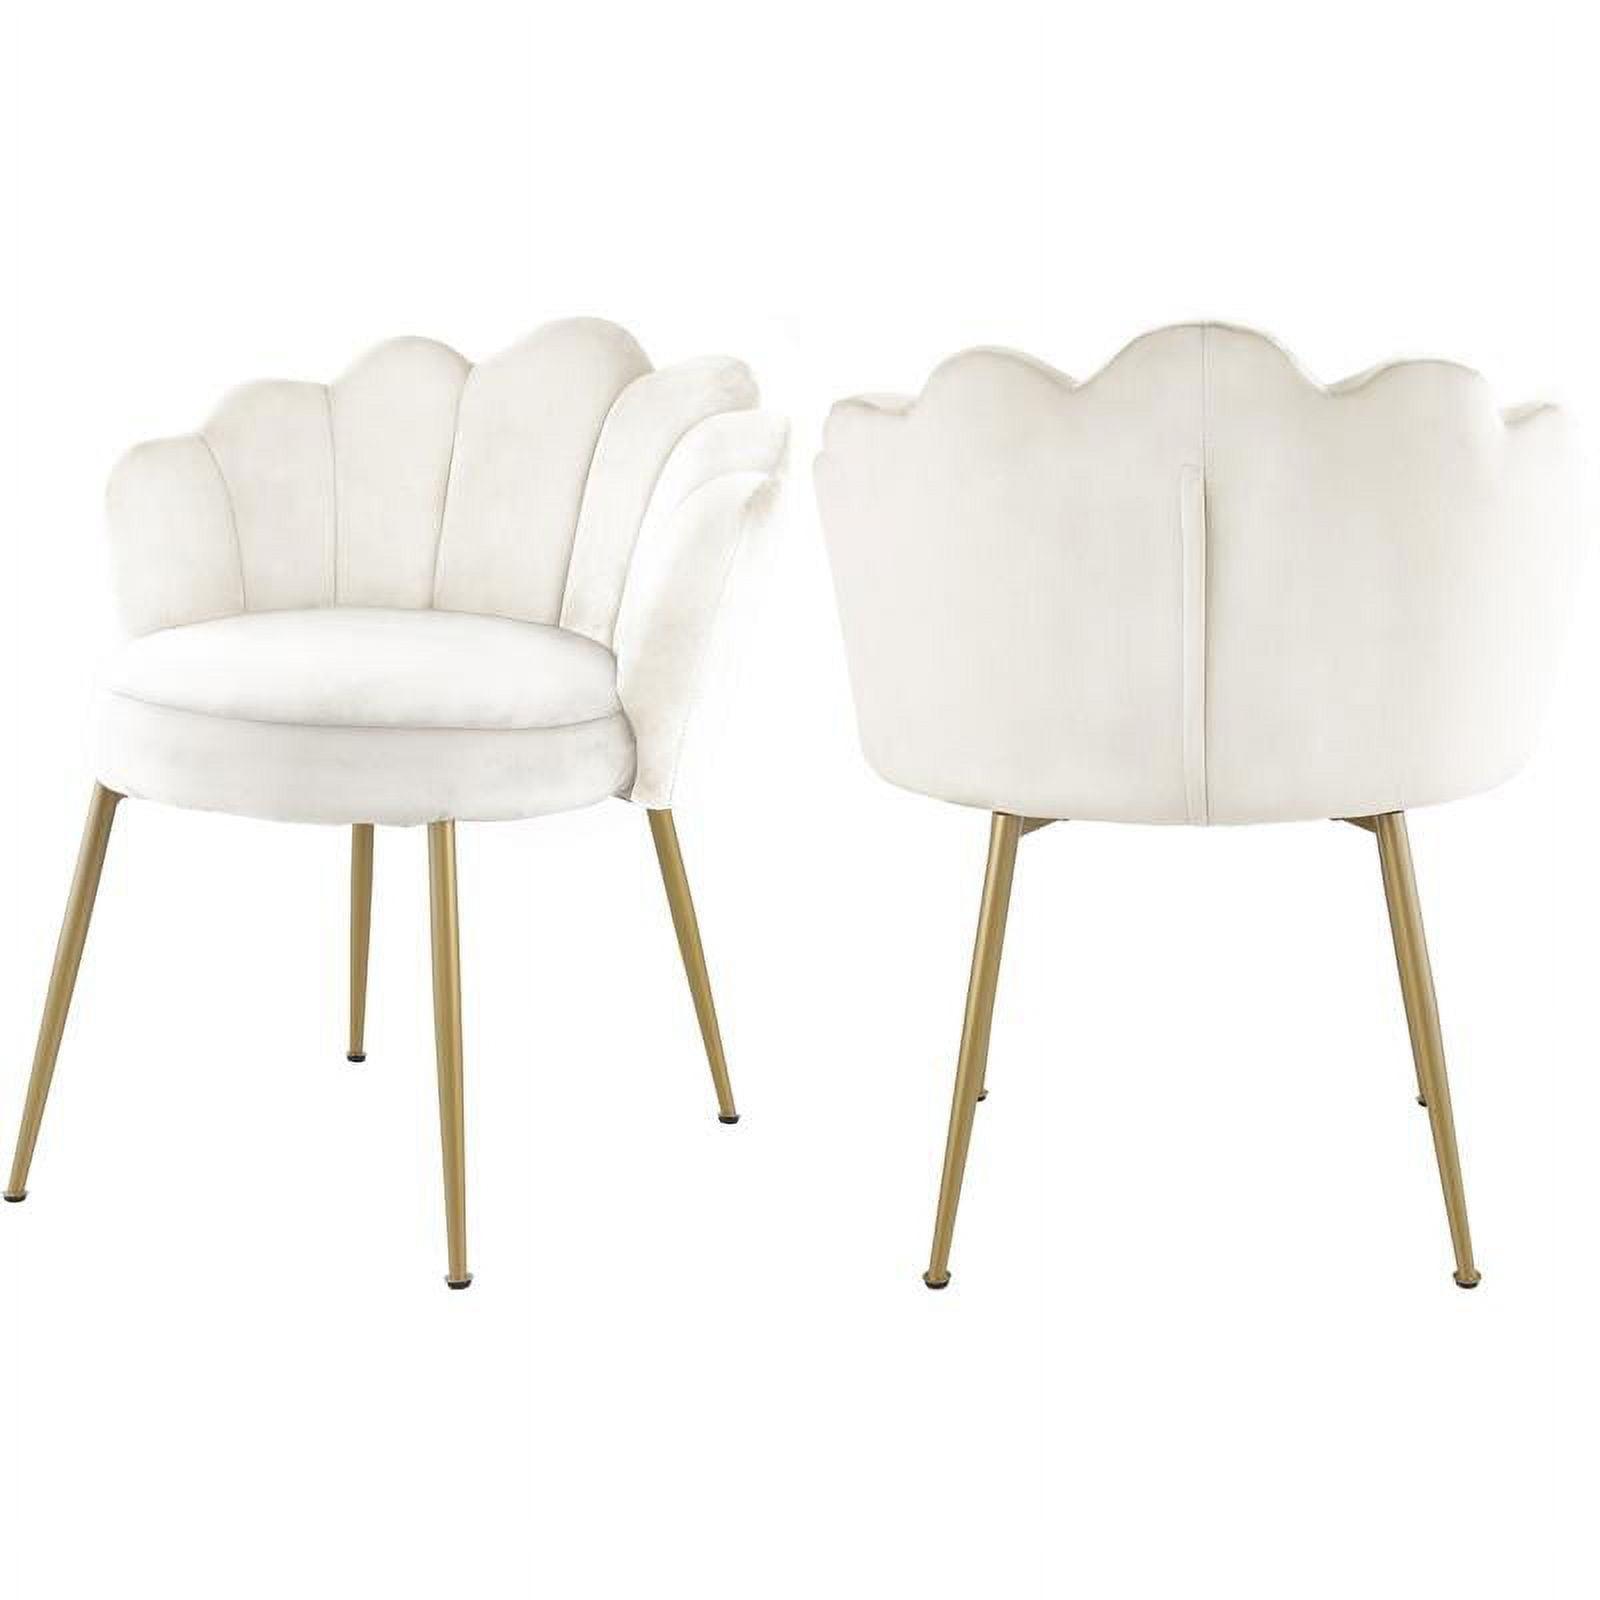 Elegant Cream Velvet Upholstered Side Chair with Brushed Gold Legs